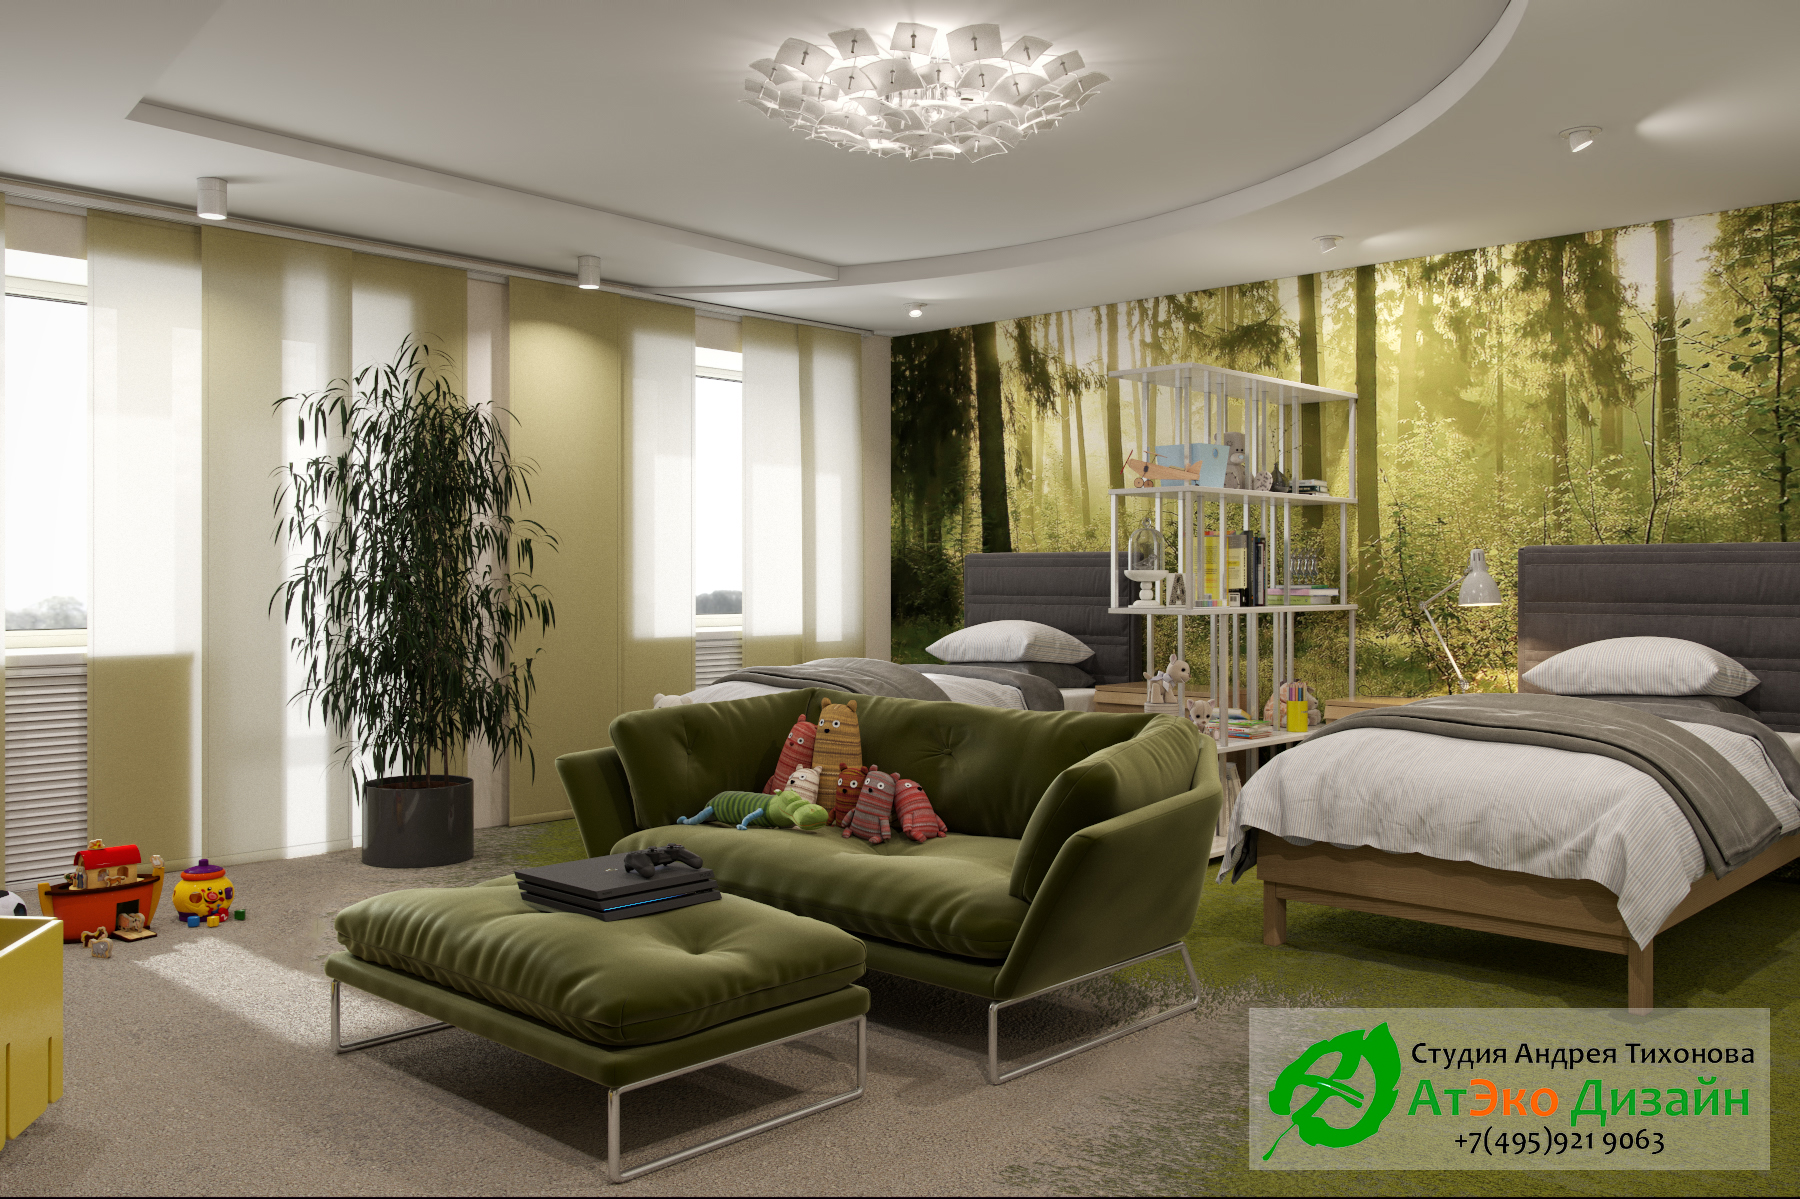 Фото дизайна спальной комнаты и зоны отдыха для детей в апартаментах